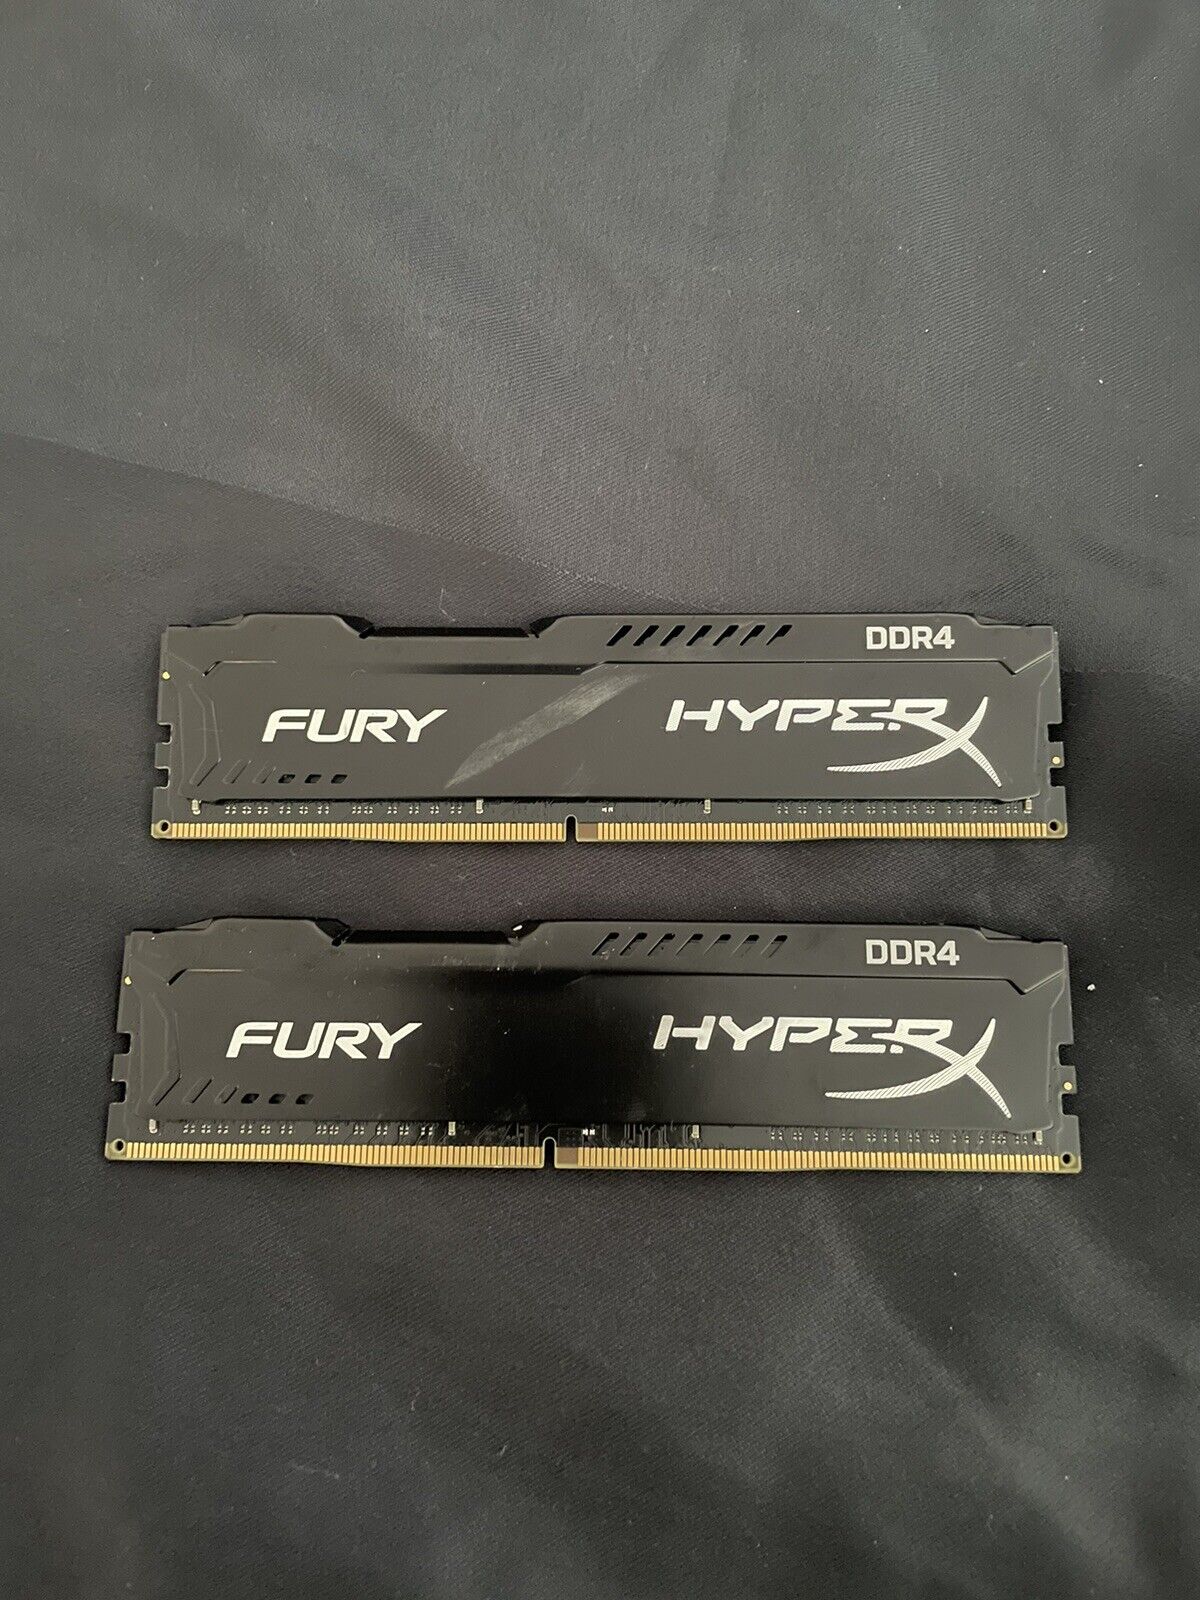 HyperX DDR4 Ram, HX426C15FB2/8 - 8GB Per A Module, 2 Modules Total for 16GB